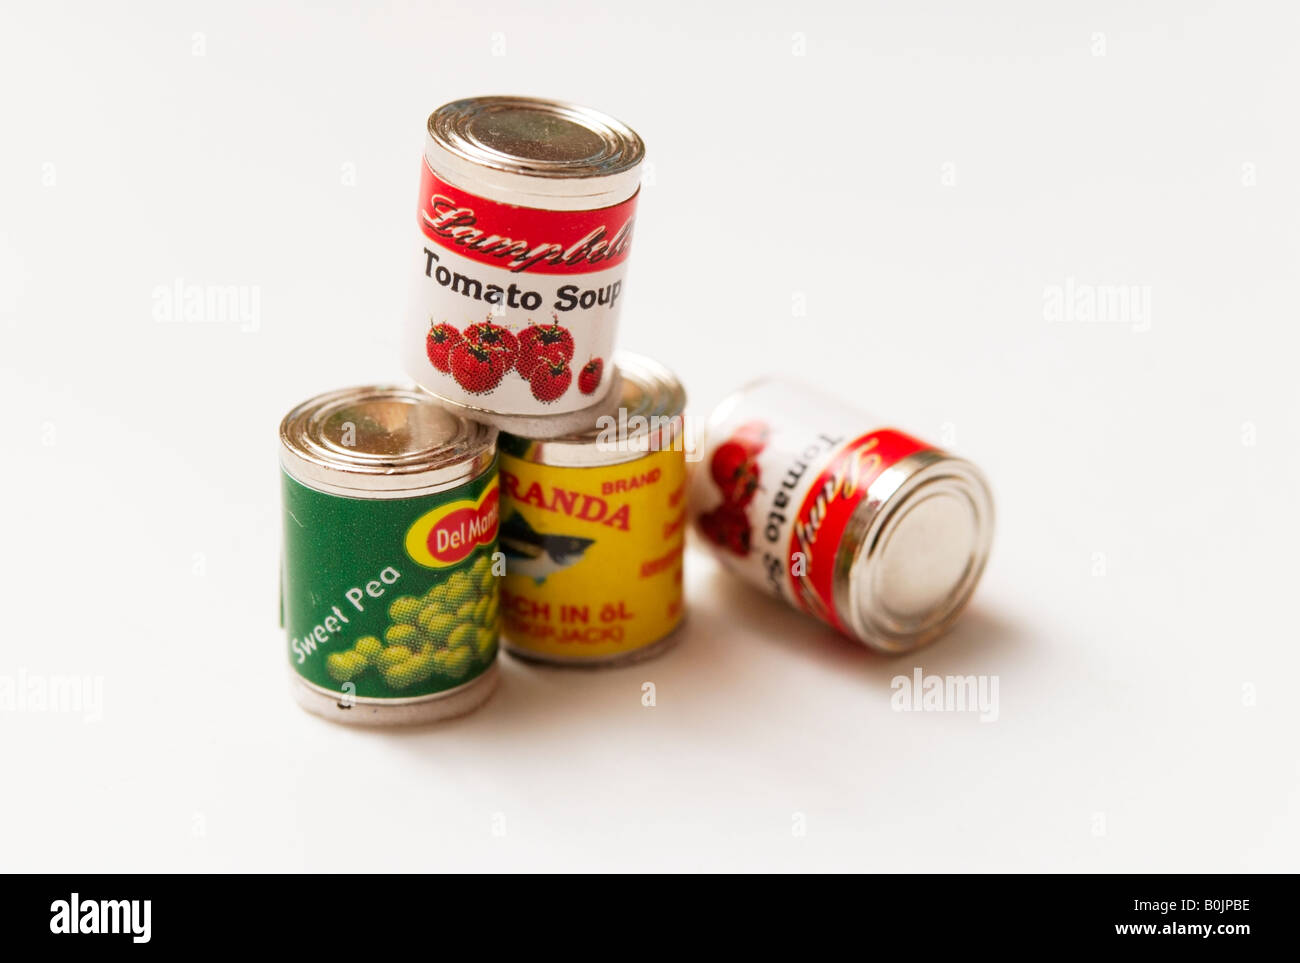 Miniatur aus der Dose Miranda Thunfisch, Dosen von Del Monte Zuckererbsen und Campbells Tomatensuppe Stockfoto